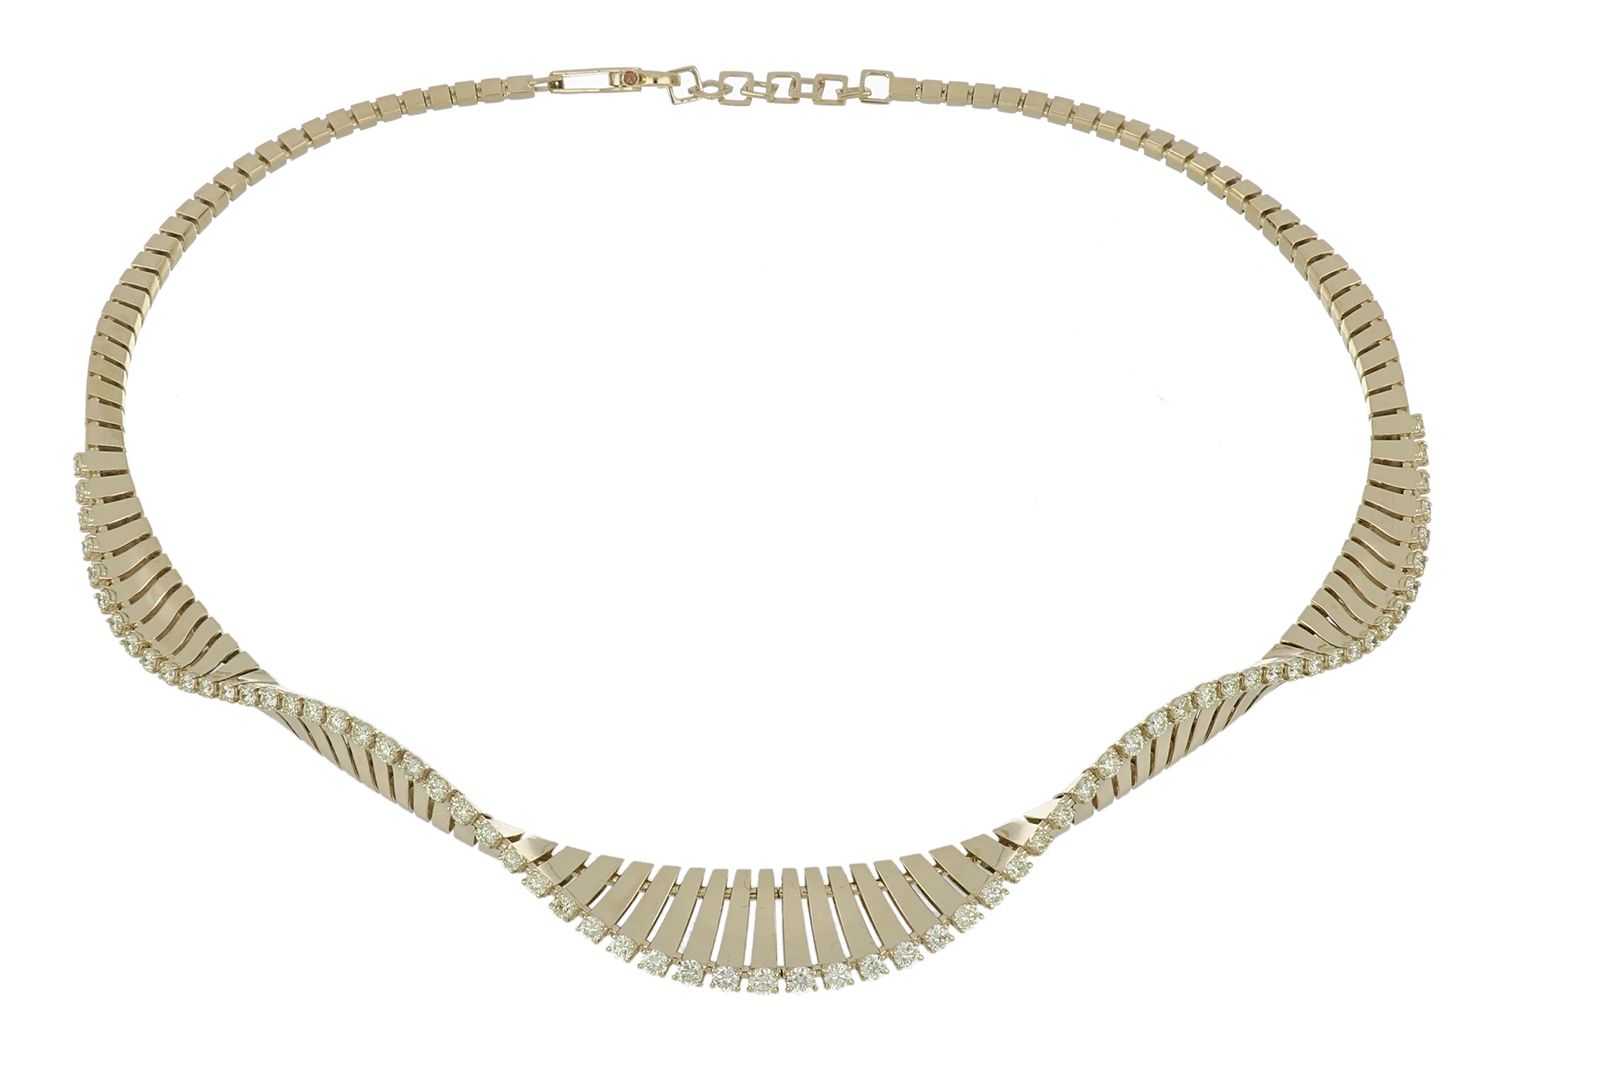 FerrariFirenze Vito 18k yellow gold choker necklace with 3.20 carats of champagne diamonds